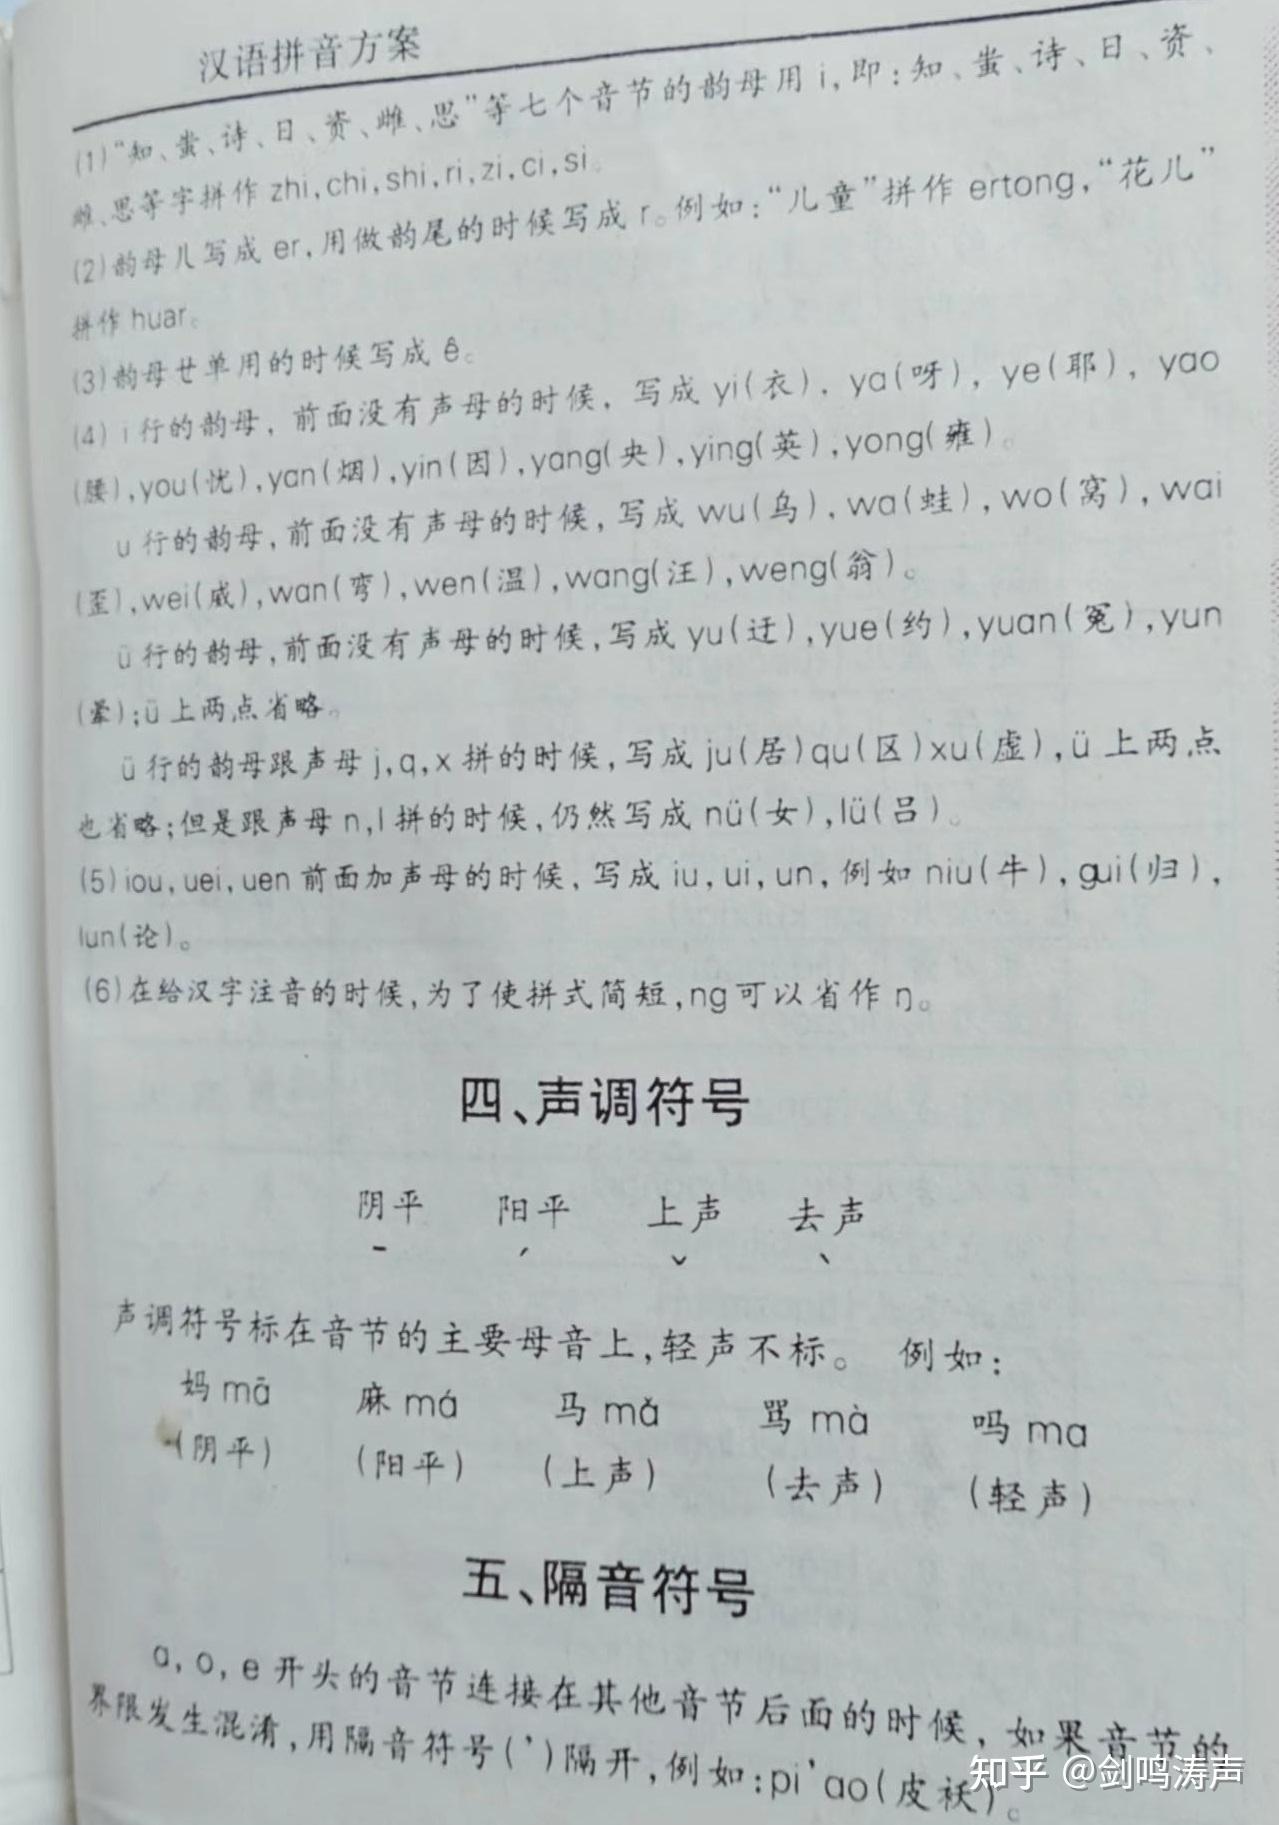 题目是《教育部回应汉语拼音o读法:可参考喔发音》